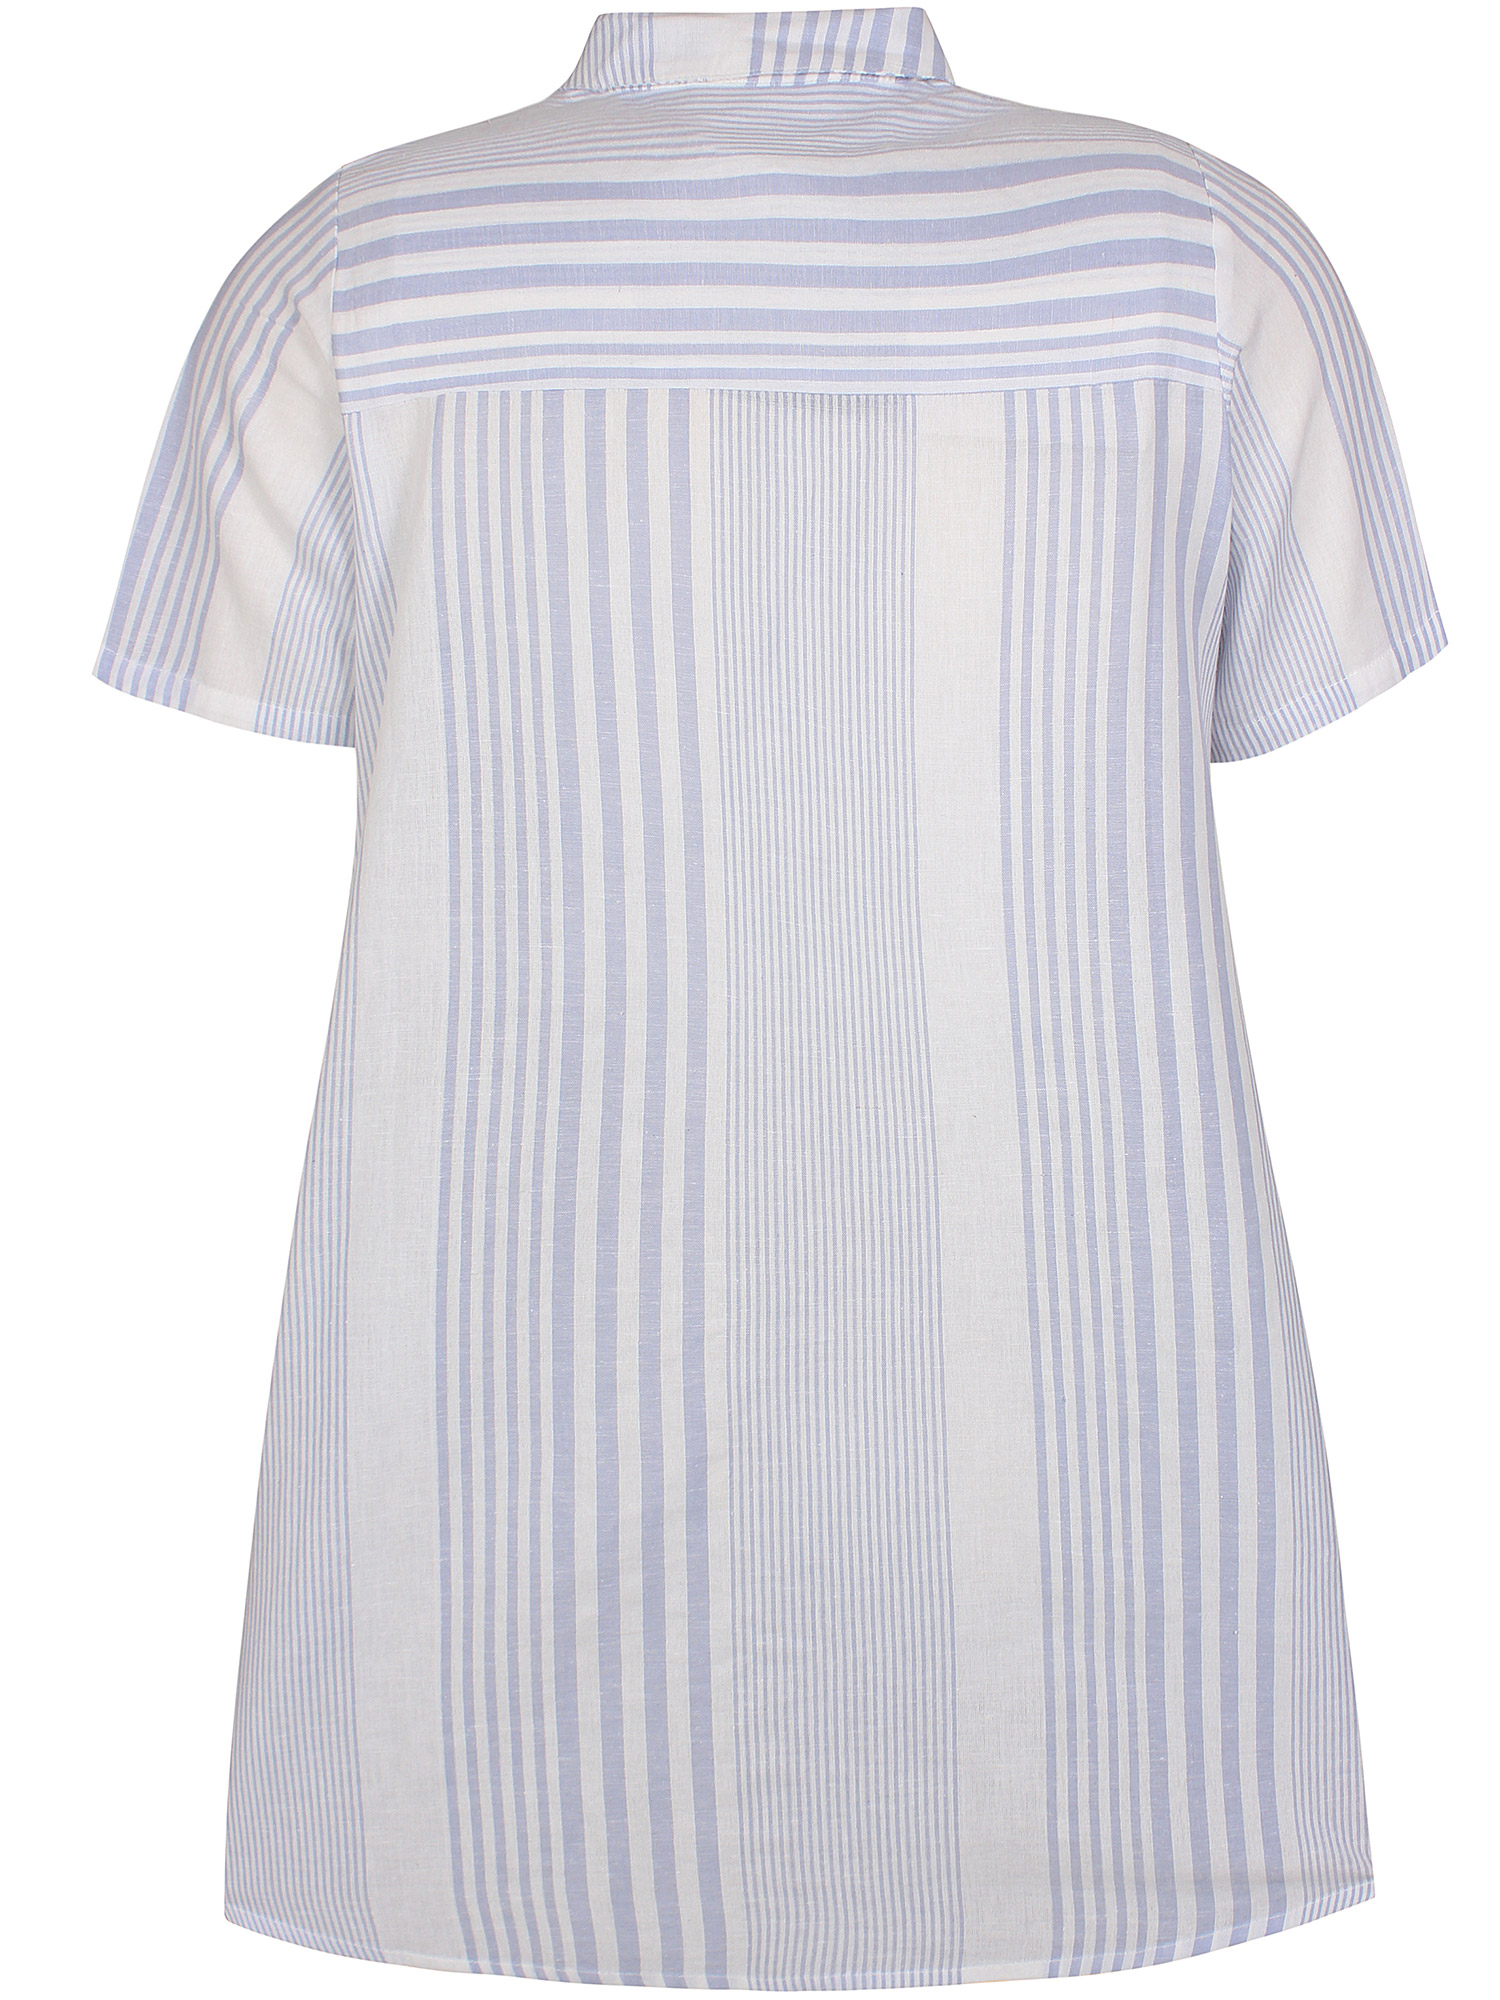 Shara - skjortetunika i hvite og lyseblå striper fra Zhenzi